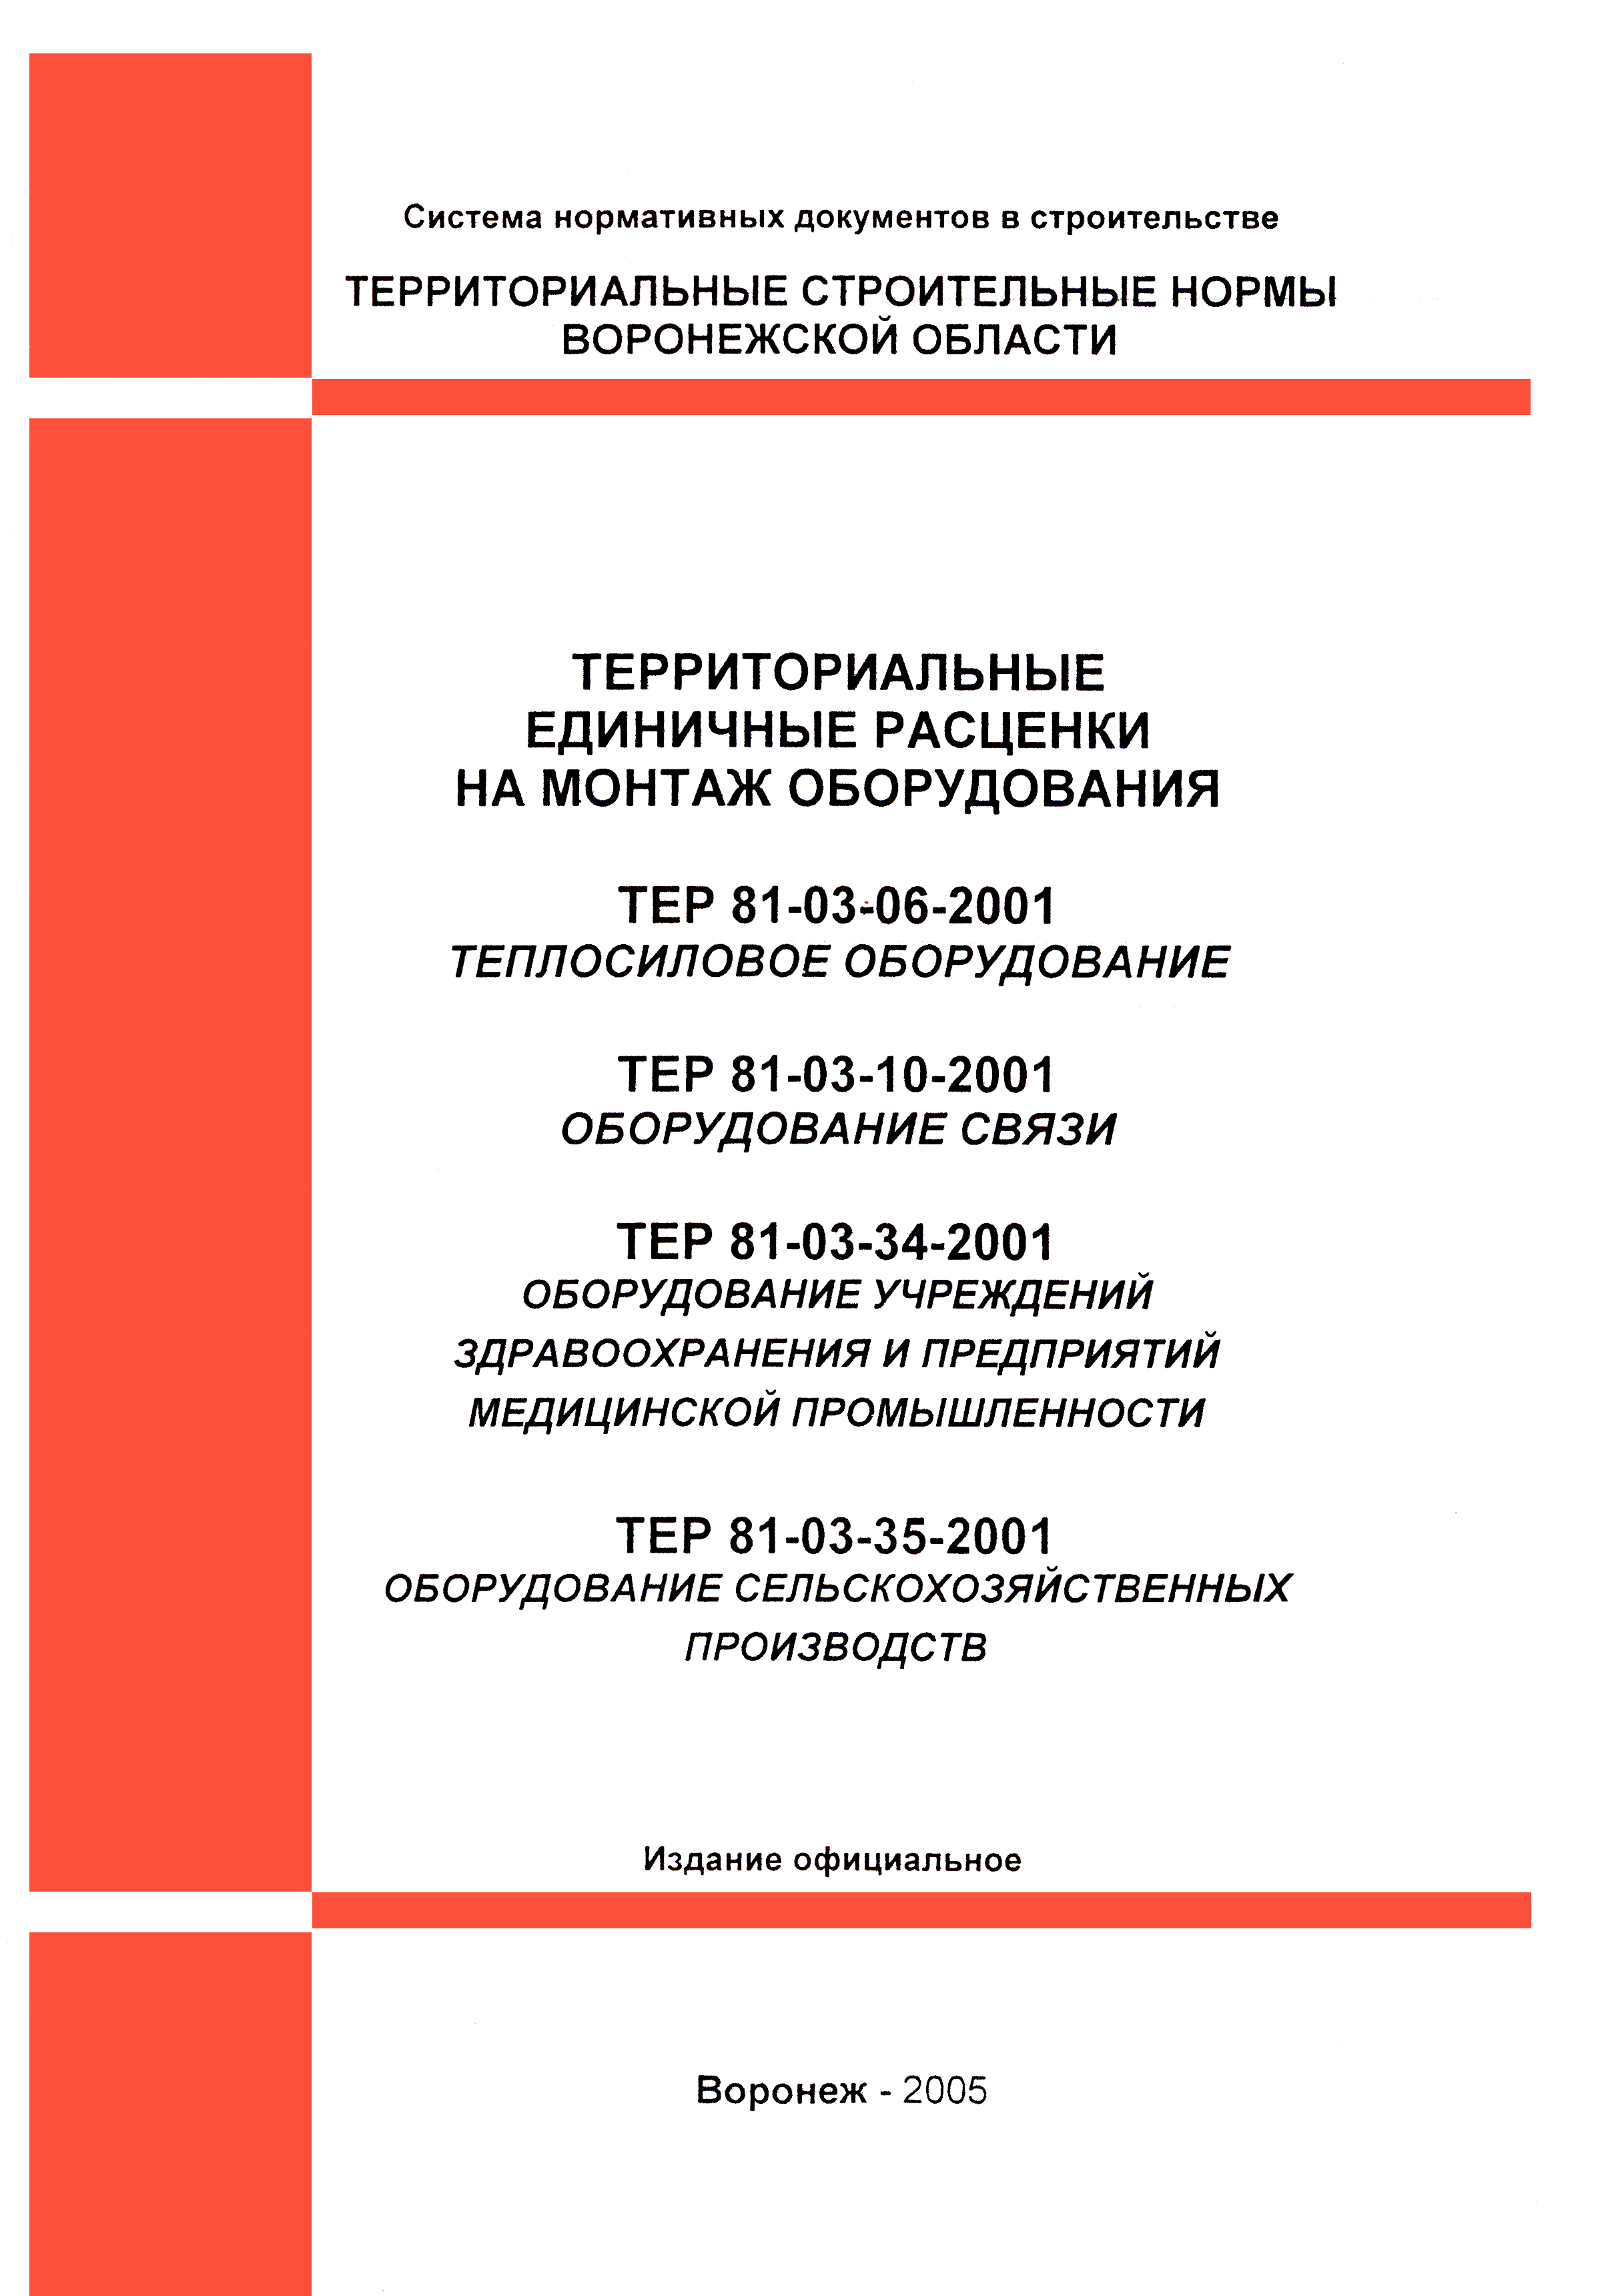 ТЕРм Воронежская область 81-03-34-2001